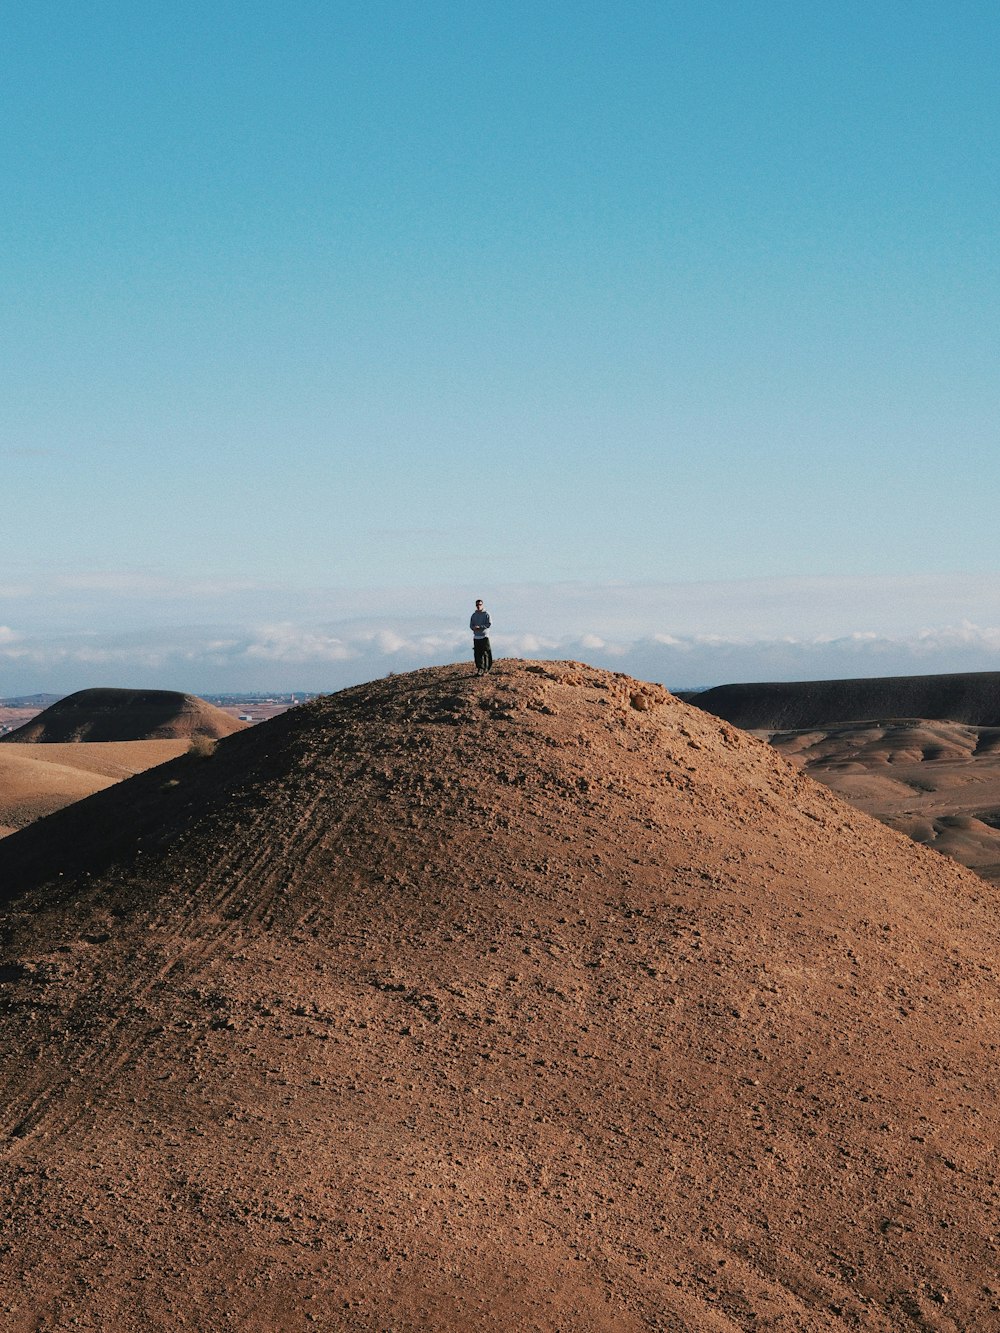 Una persona in piedi in cima a un grande cumulo di terra foto – Agafay  Immagine gratuita su Unsplash